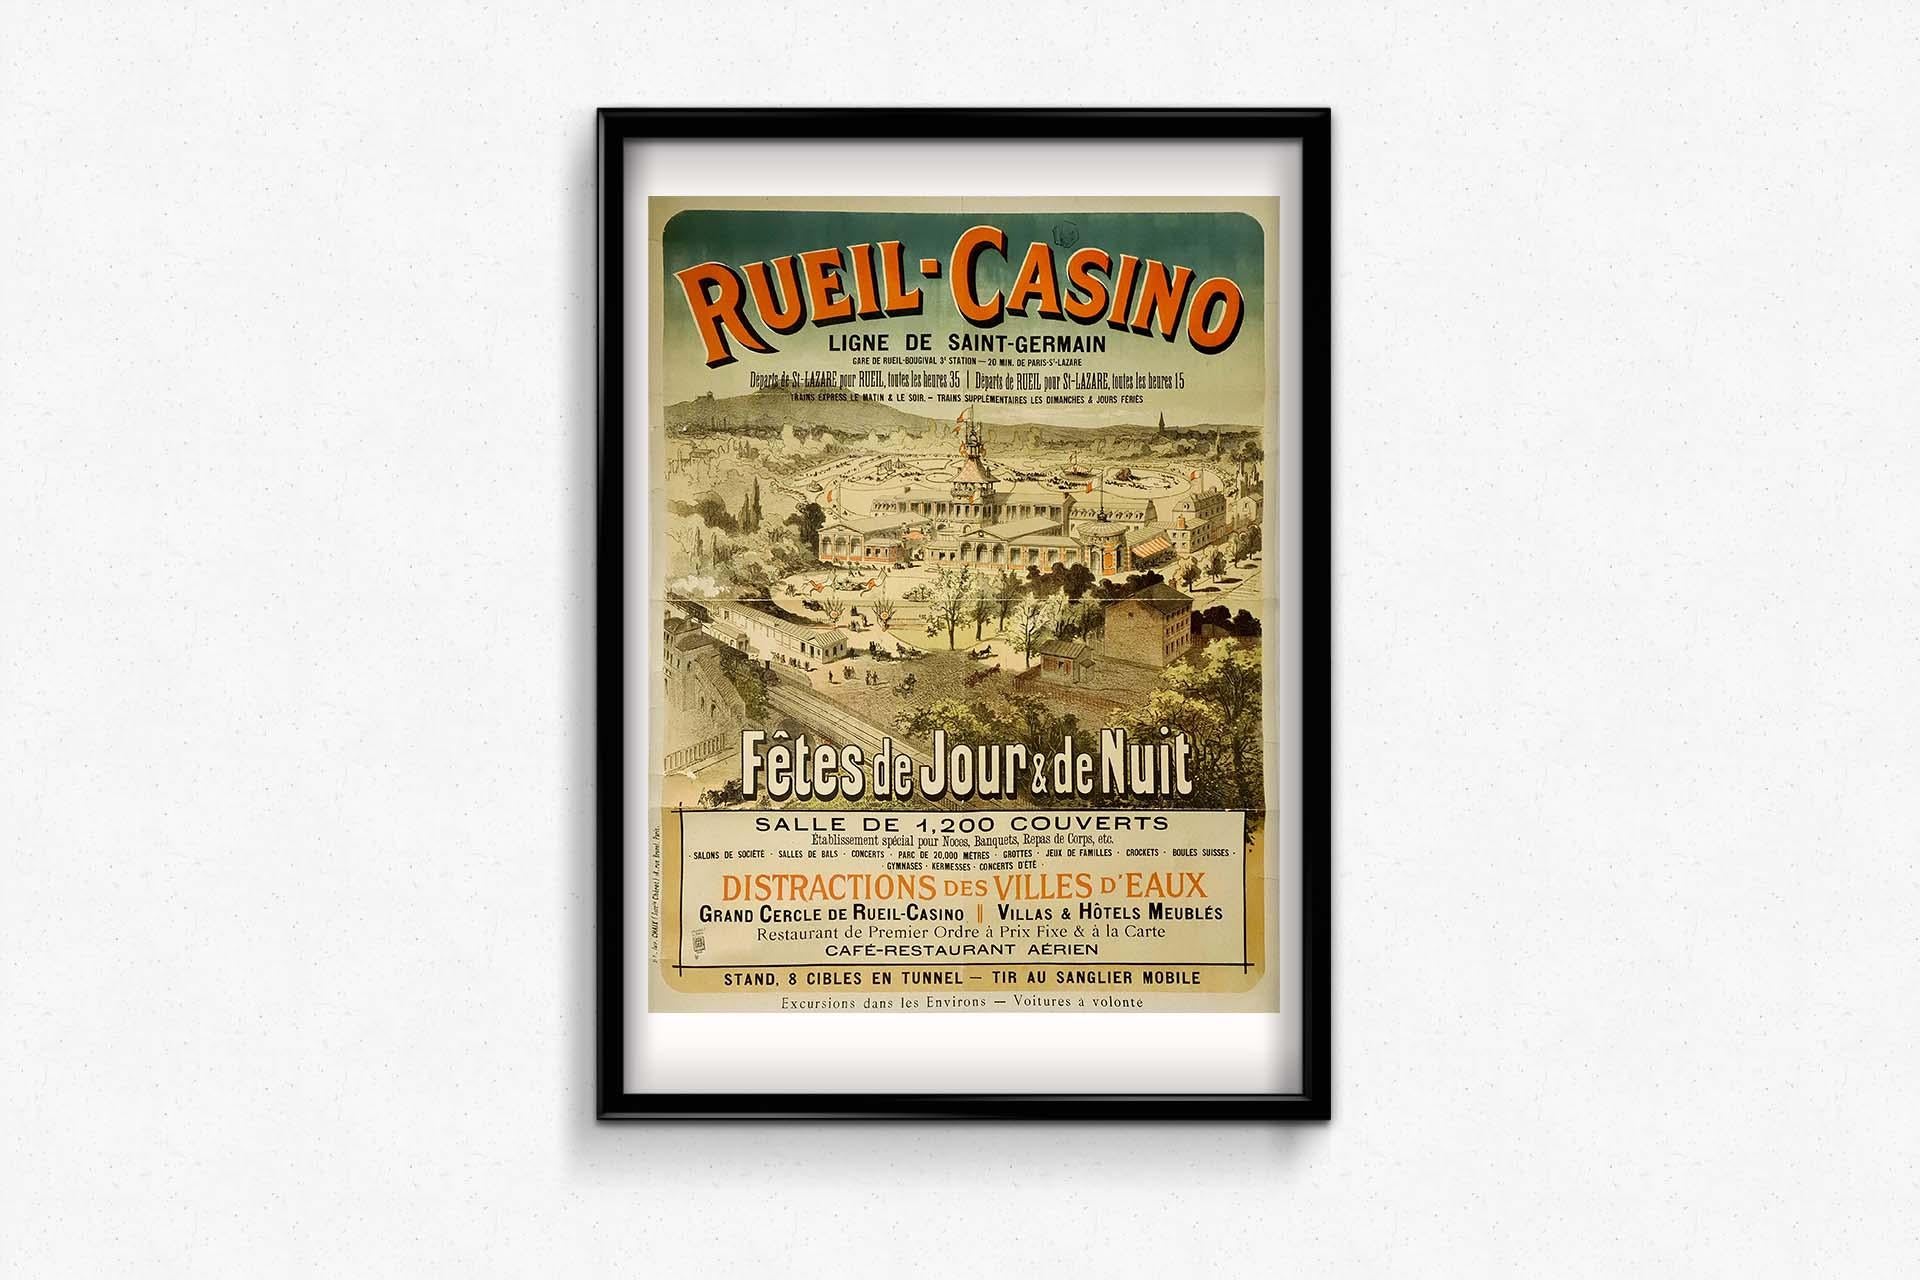 Das Original-Reiseplakat aus dem Jahr 1883, das für das Casino von Rueil und seine Festivitäten bei Tag und bei Nacht wirbt, fängt die Essenz von Freizeit und Unterhaltung entlang der Saint Germain-Linie ein. Dieses Plakat, ein Zeugnis der Belle